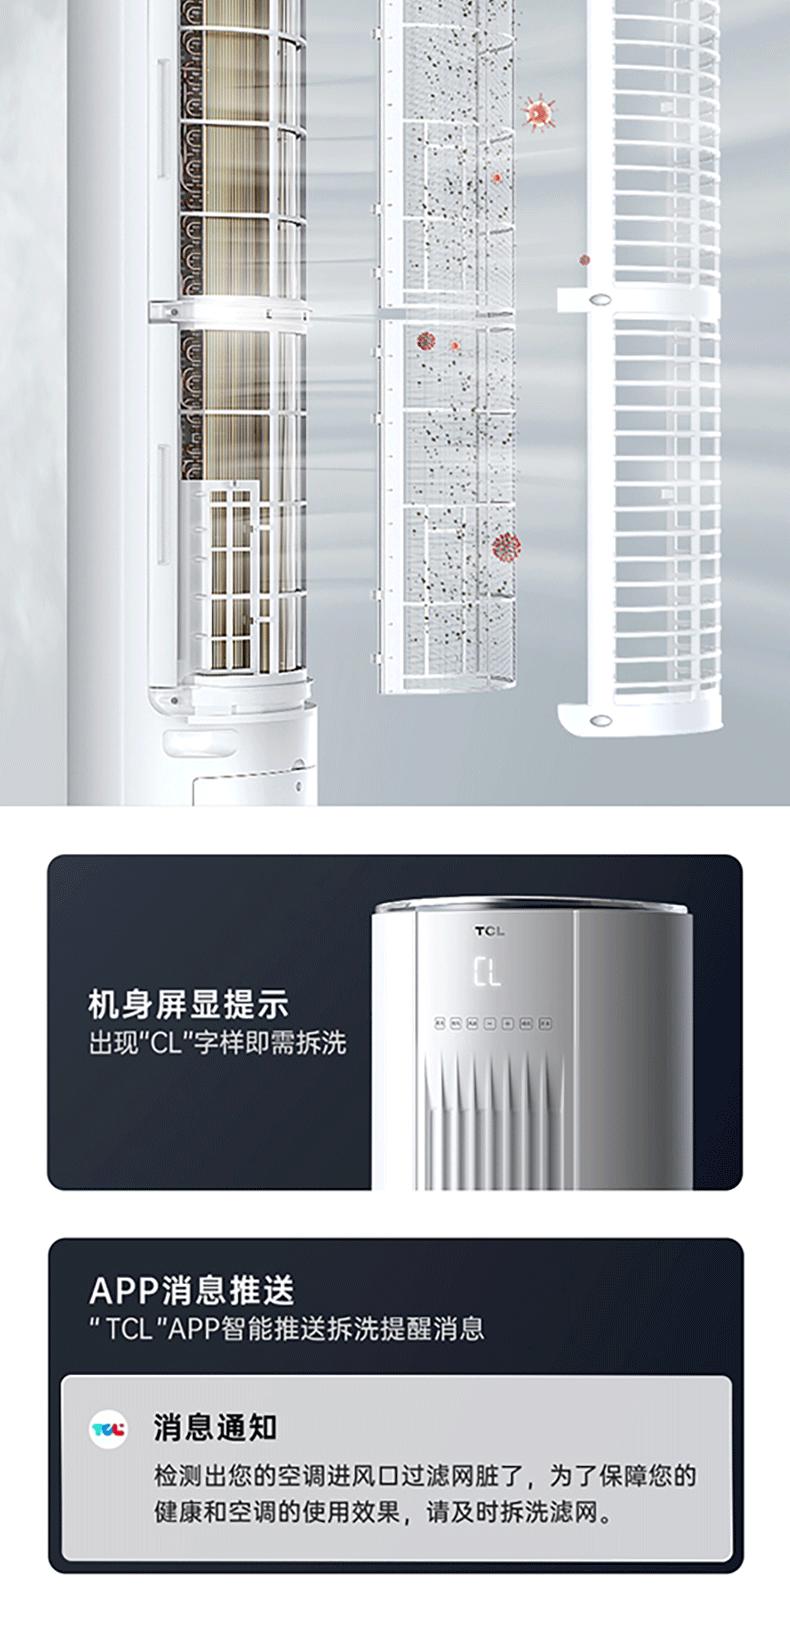 TCL空调大2匹 新级能效 变频智柔风 立柜式空调柜机 KFR-51LW/AD1a+B1（含基础安装）